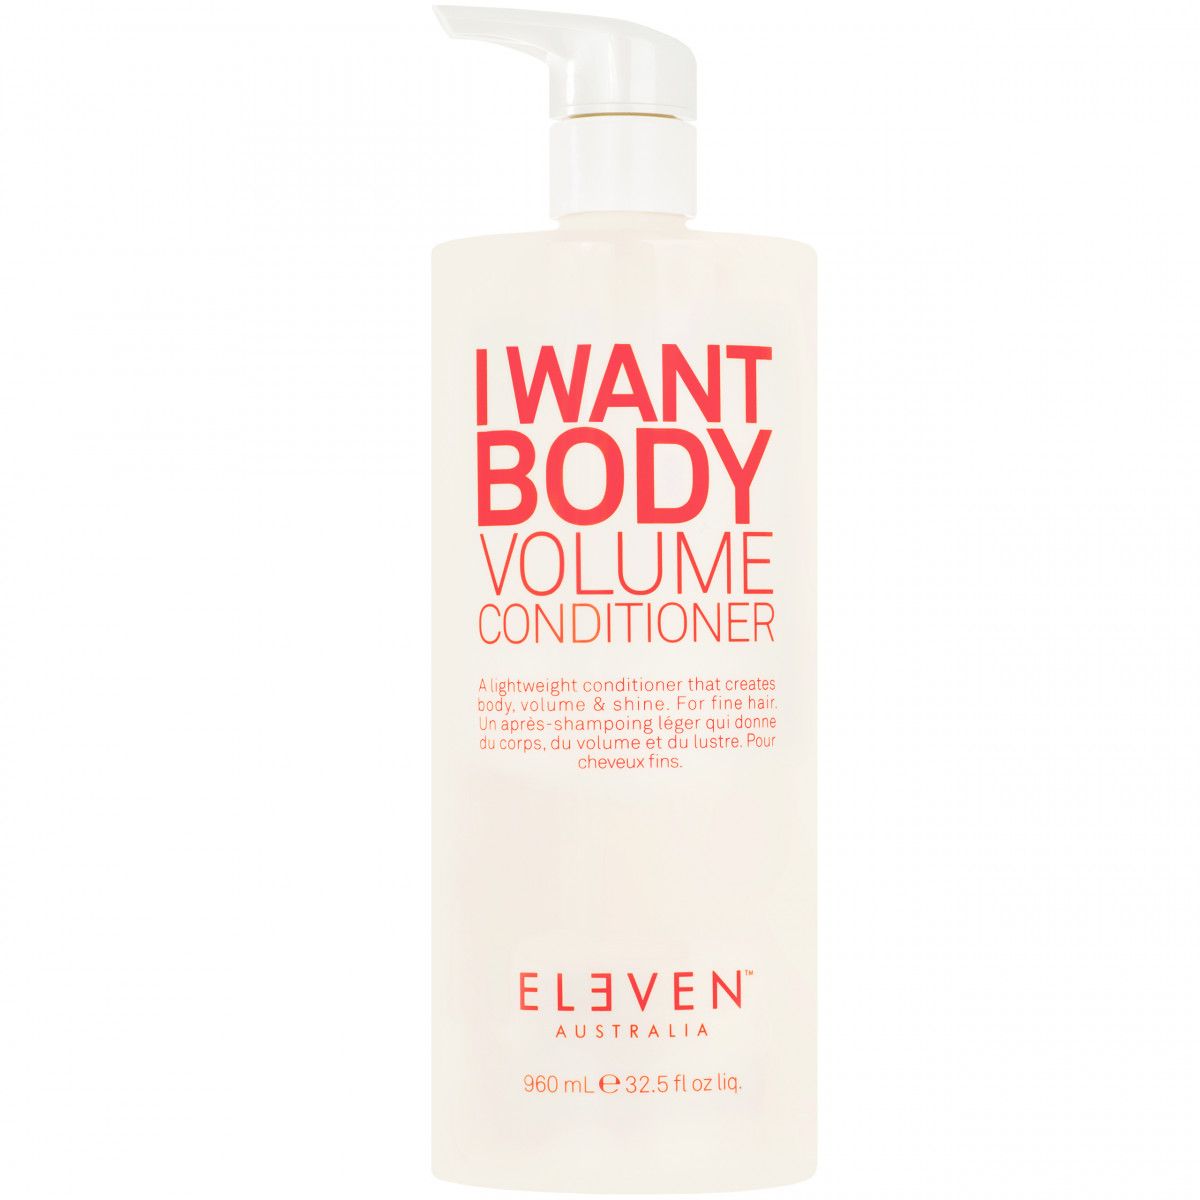 Eleven Australia I Want Body Volume Conditioner - odżywka do włosów dodająca objętości, 960ml